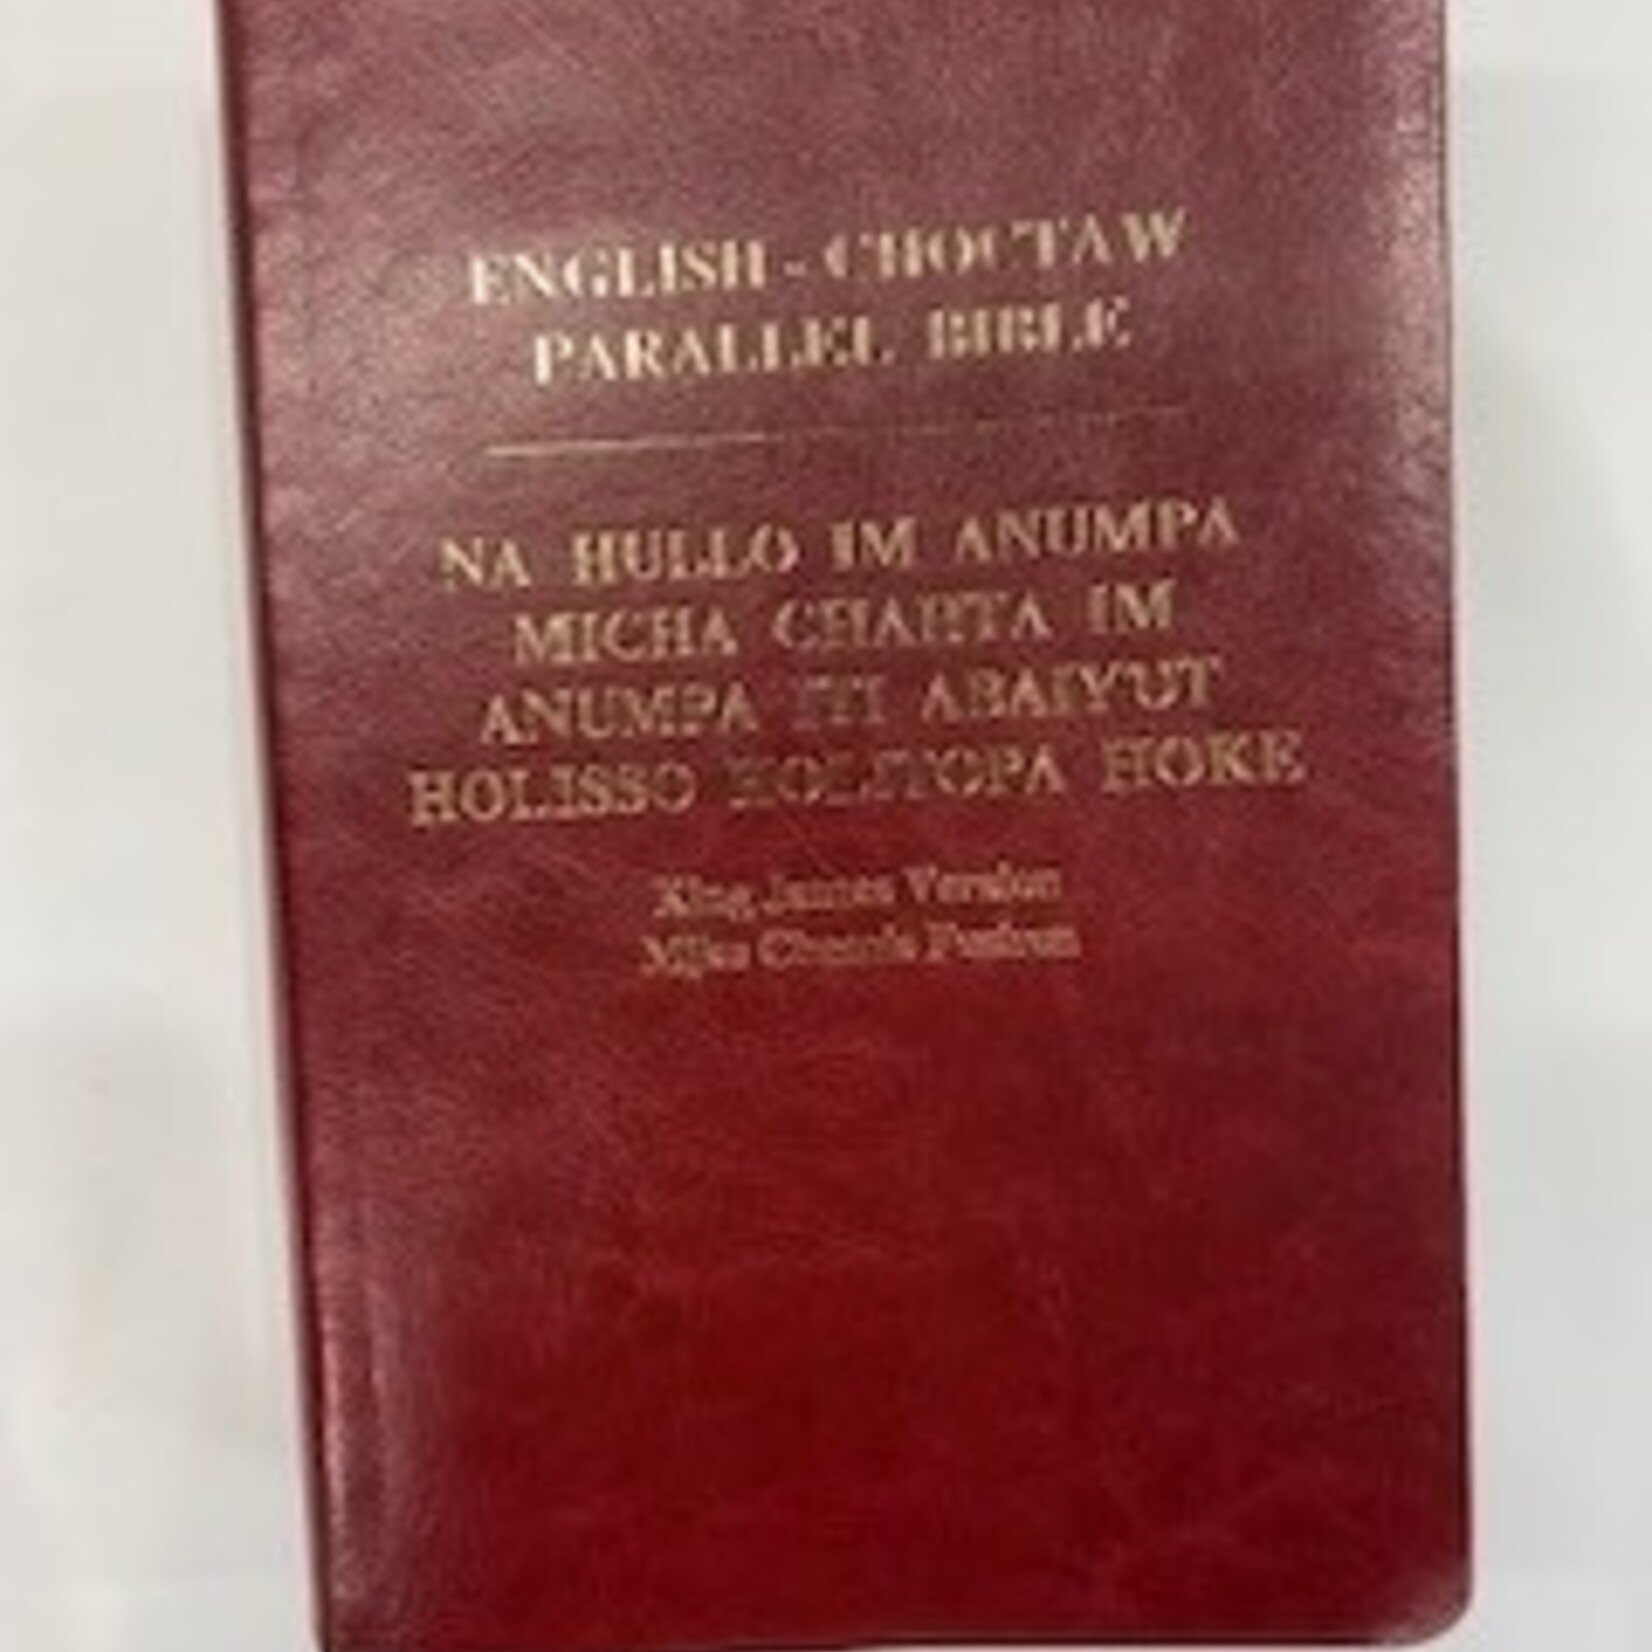 Choctaw - English Parallel Bible (Standard Binding)